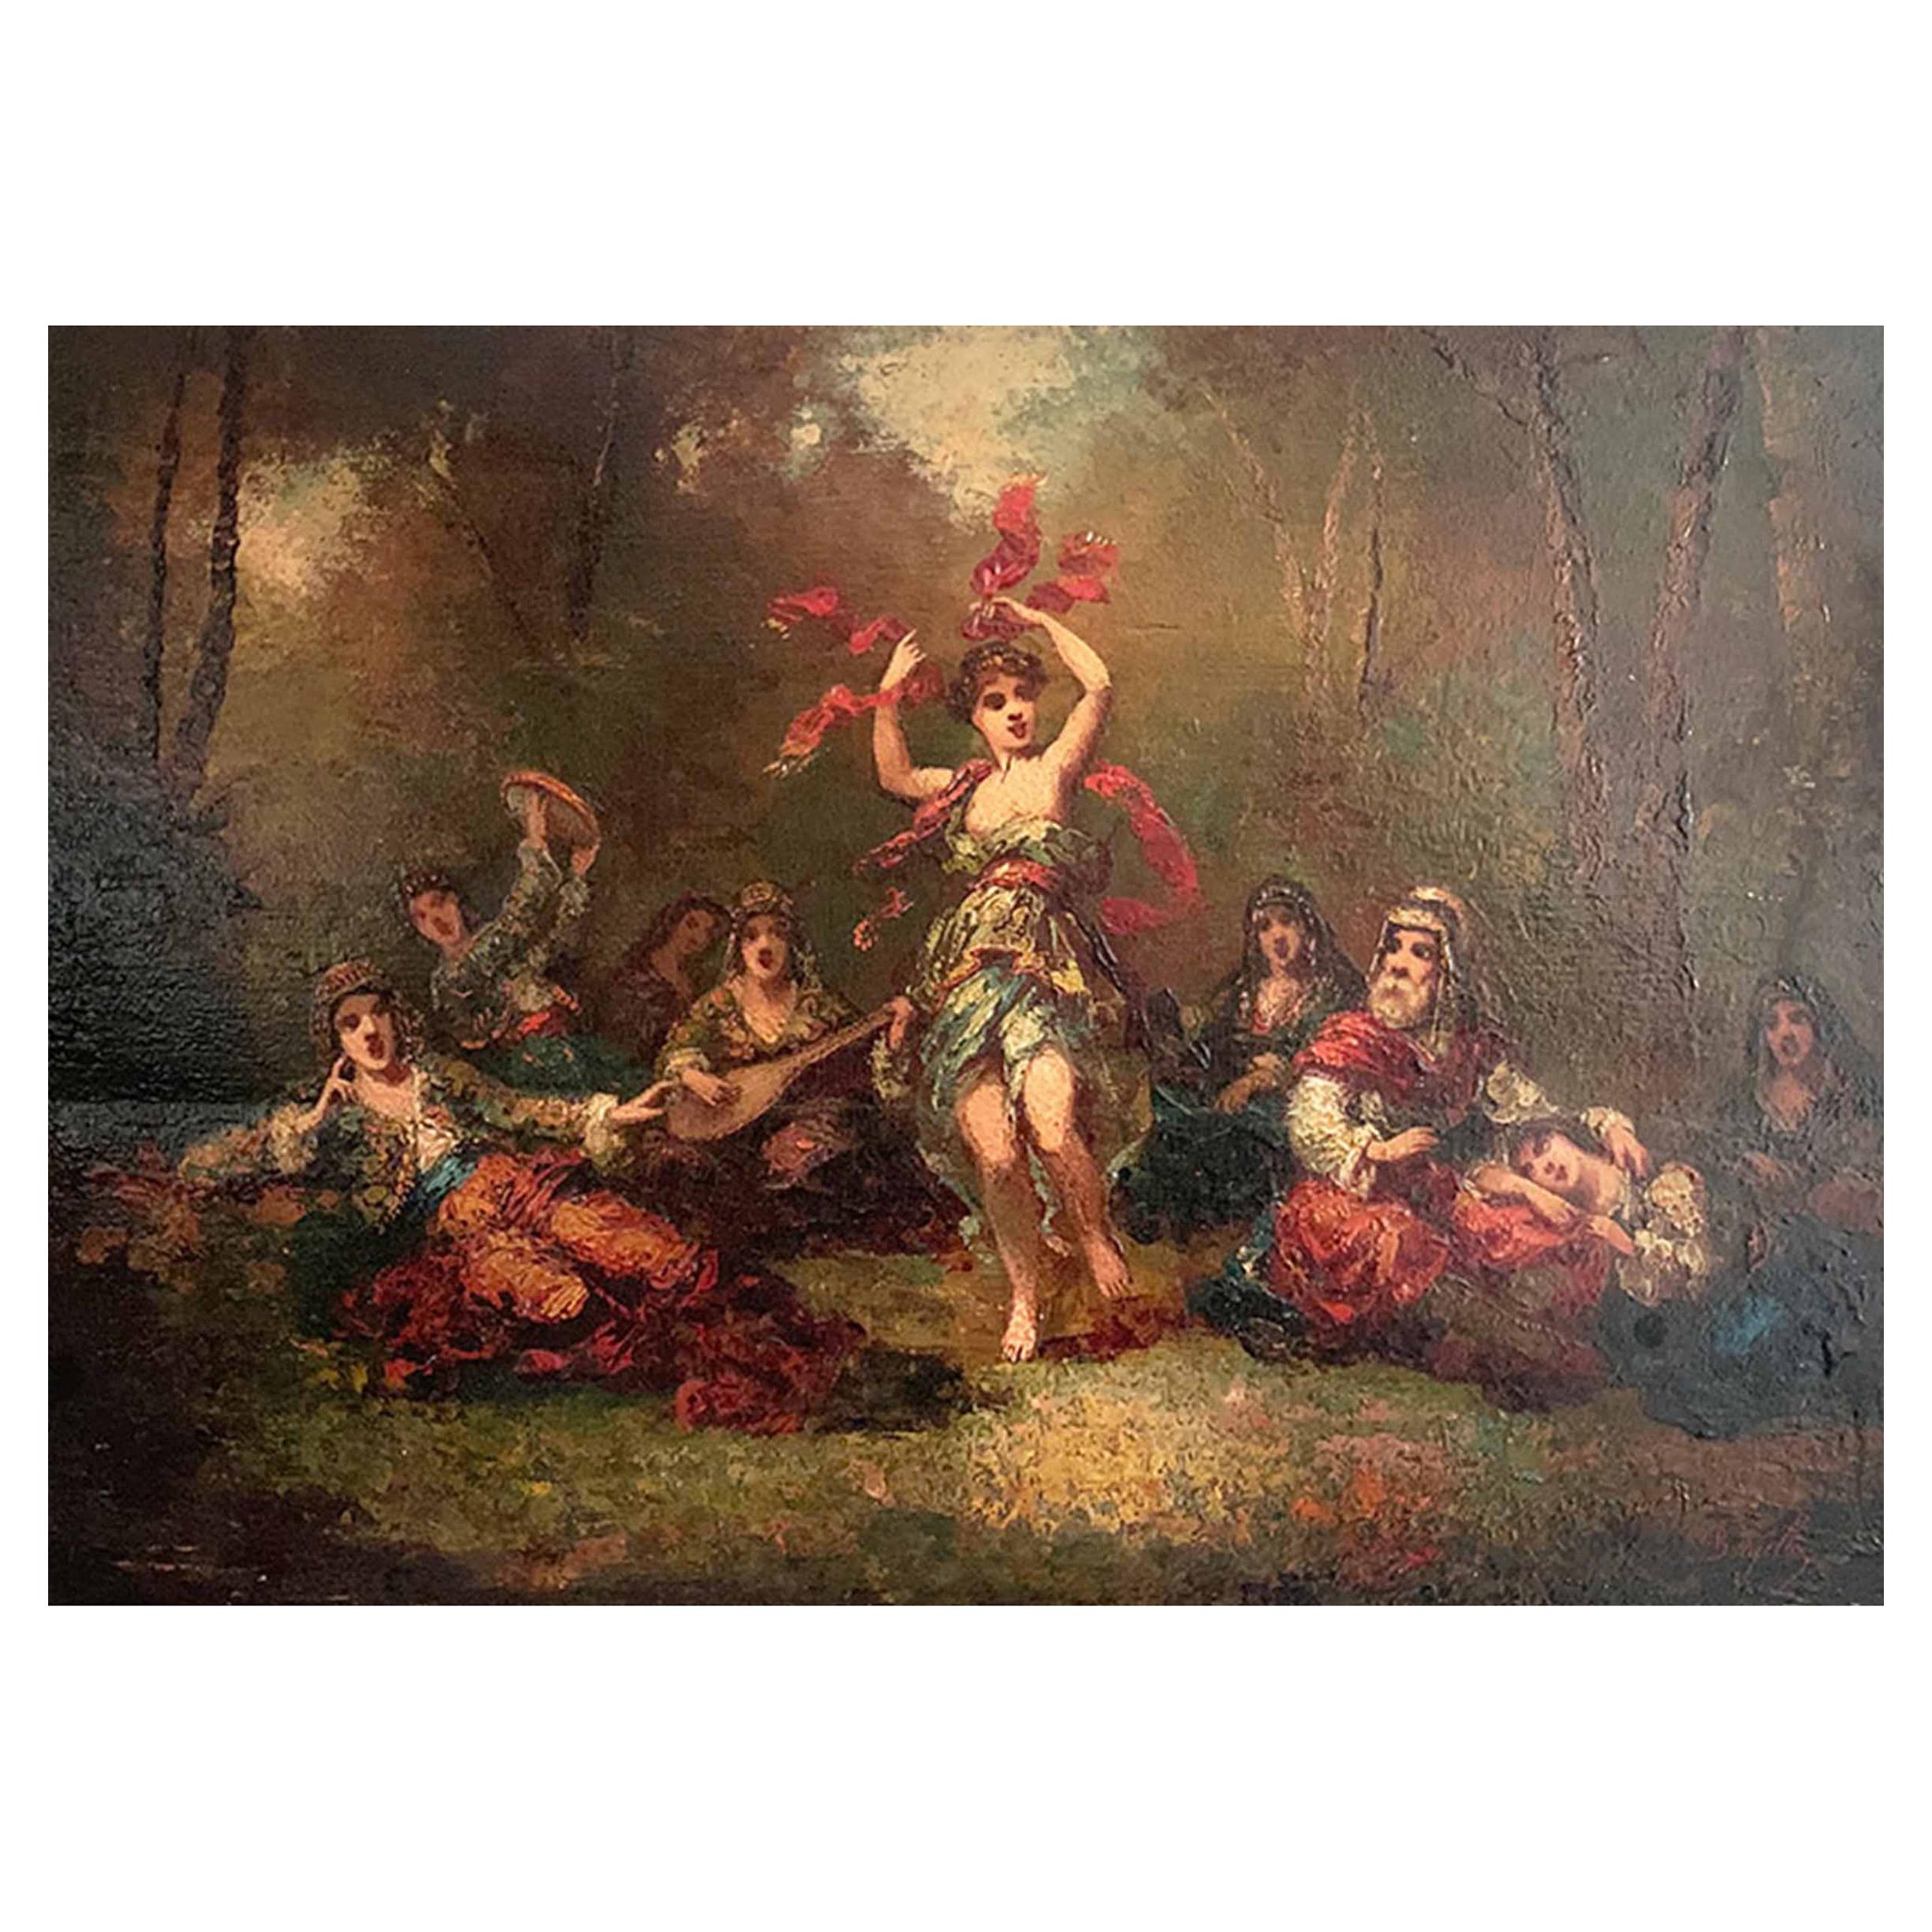 Borgella Frederic "The Oriental Dance" For Sale